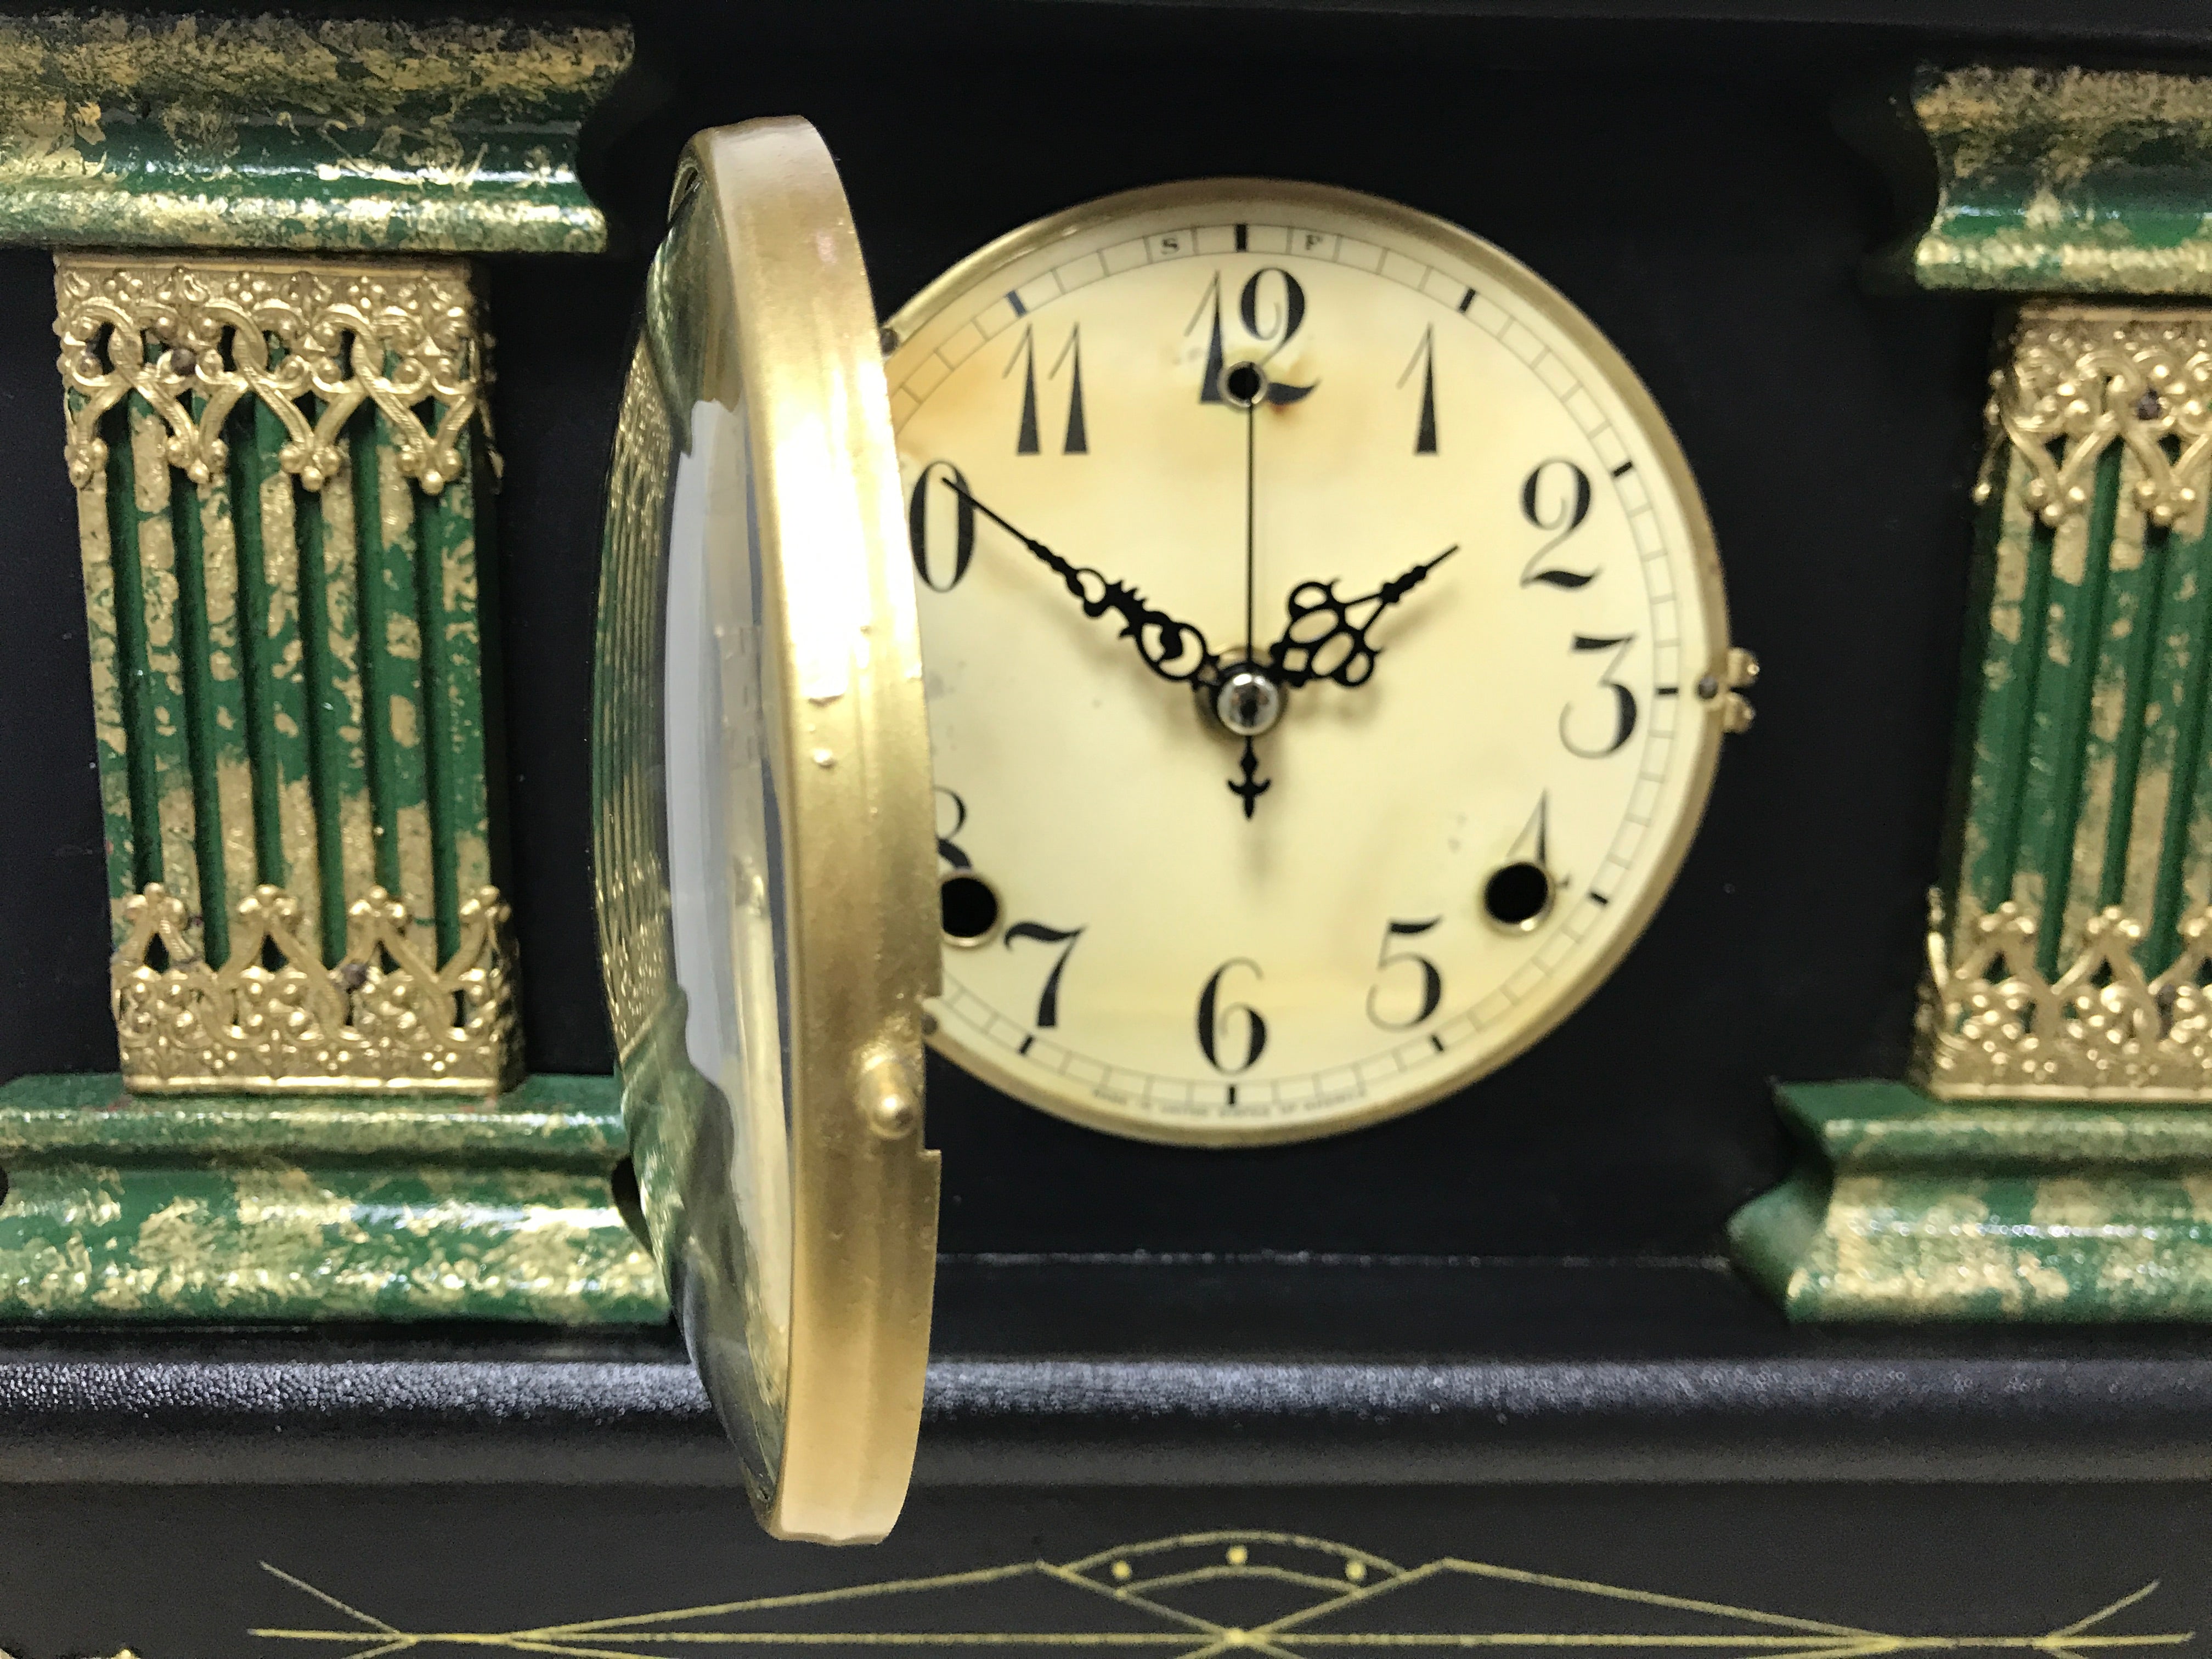 Antique U.S.A. Mantel Clock | eXibit collection